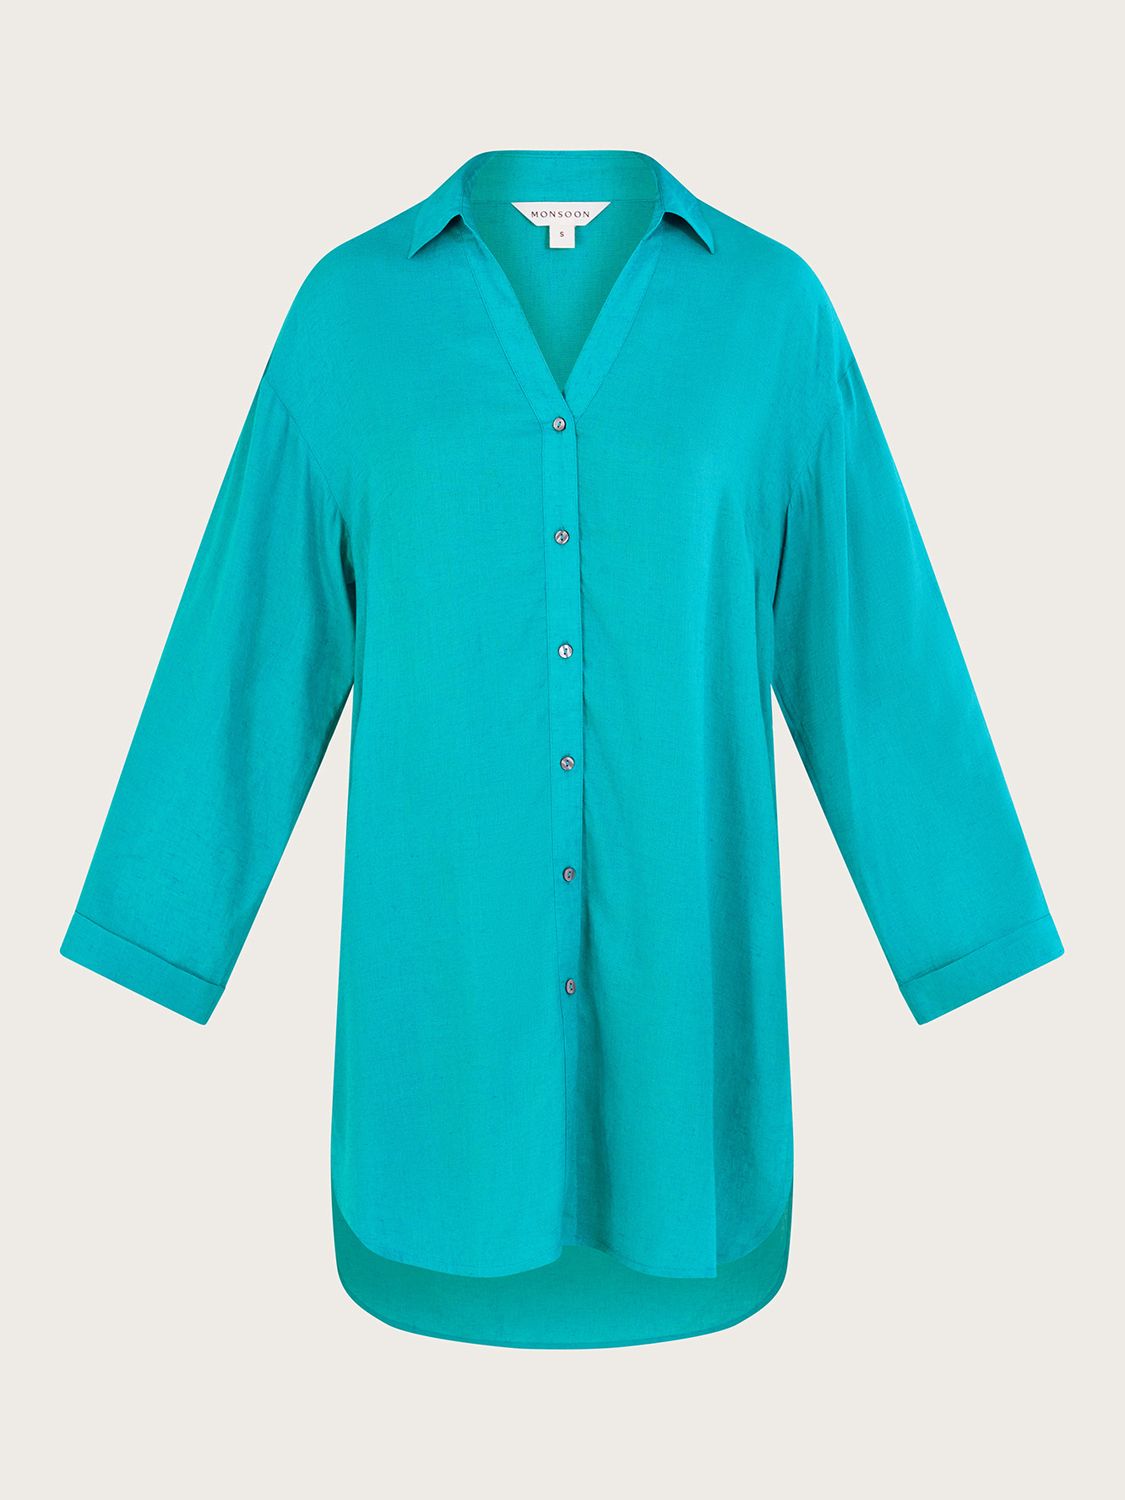 Monsoon Esme Linen Blend Beach Shirt Dress, Turquoise, S